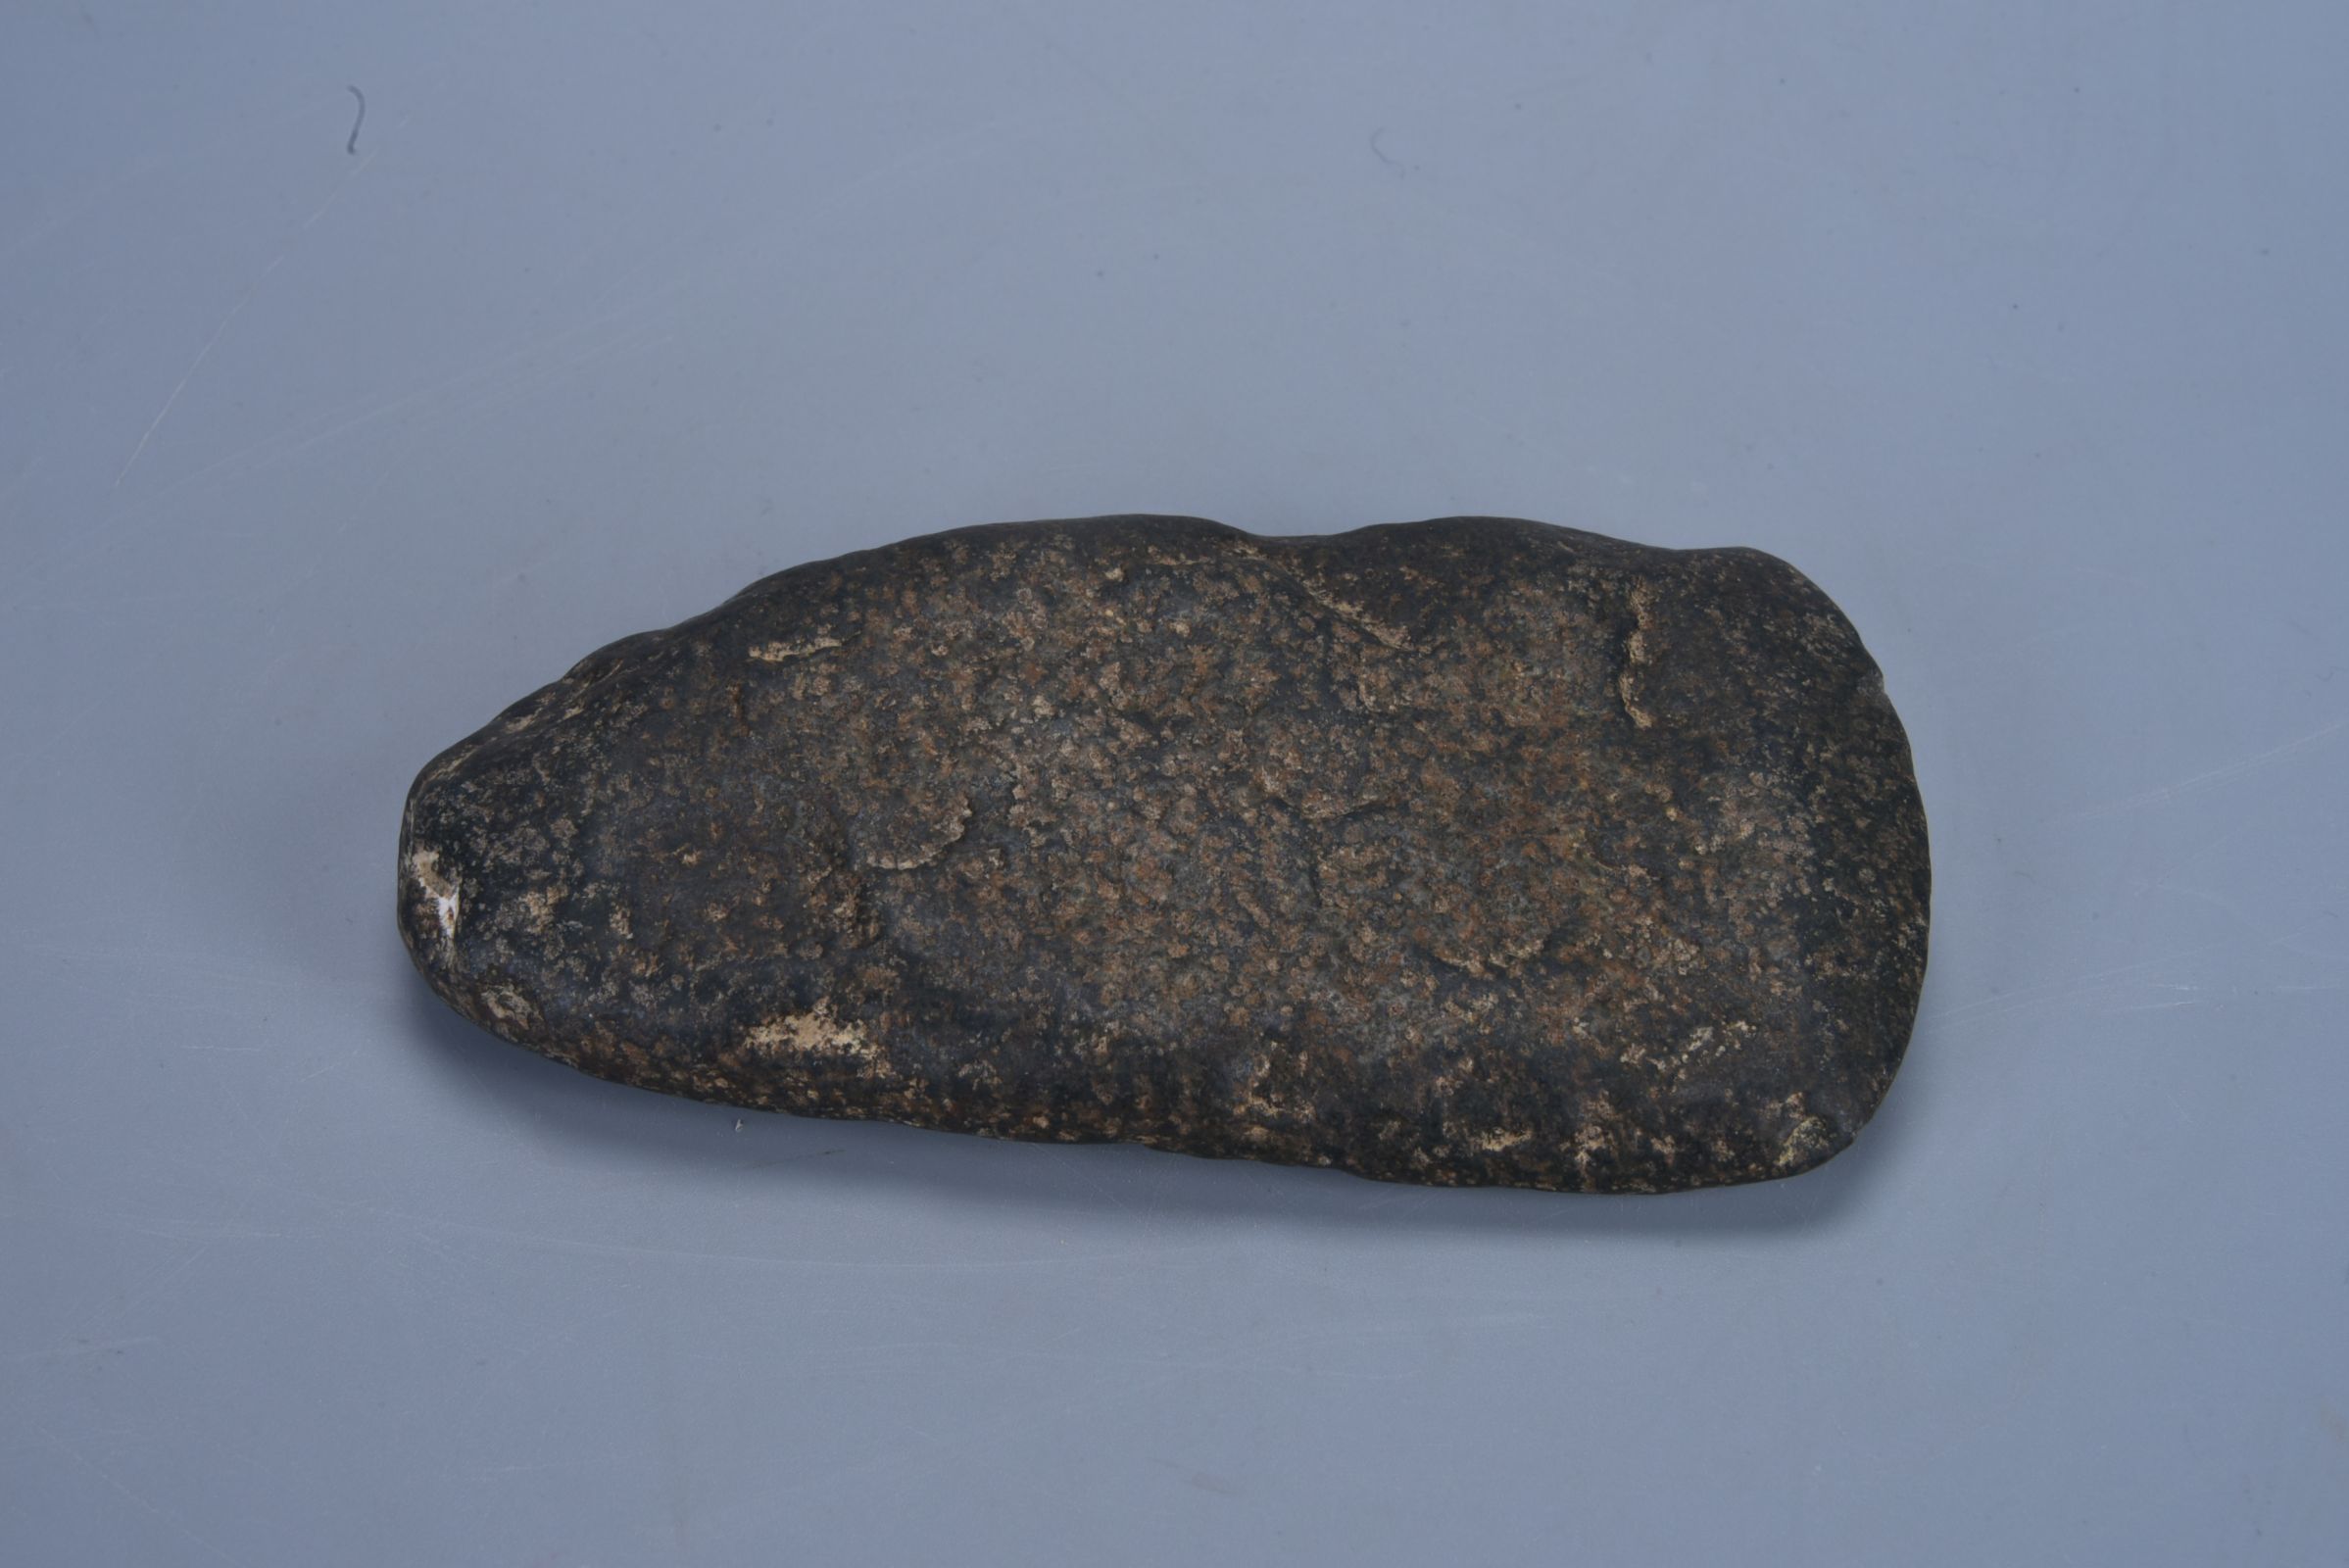 新石器时代 牛牙化石-典藏--桂林博物馆